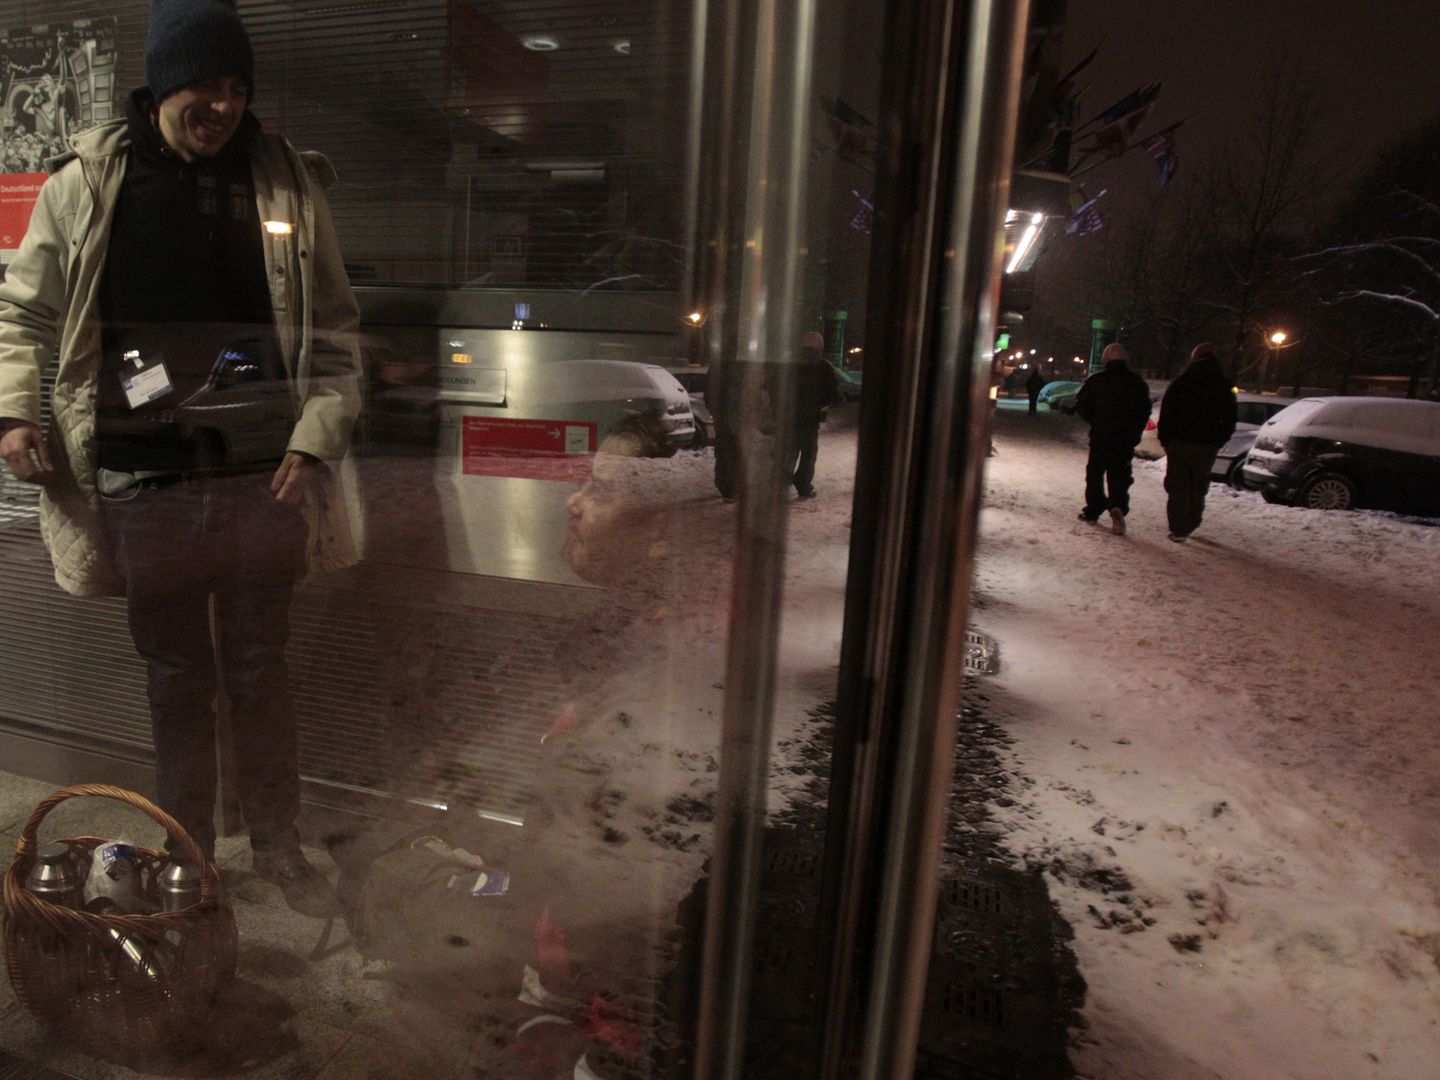 Un trabajador social habla con un vagabundo en Berlín, en diciembre de 2010 (Reuters).